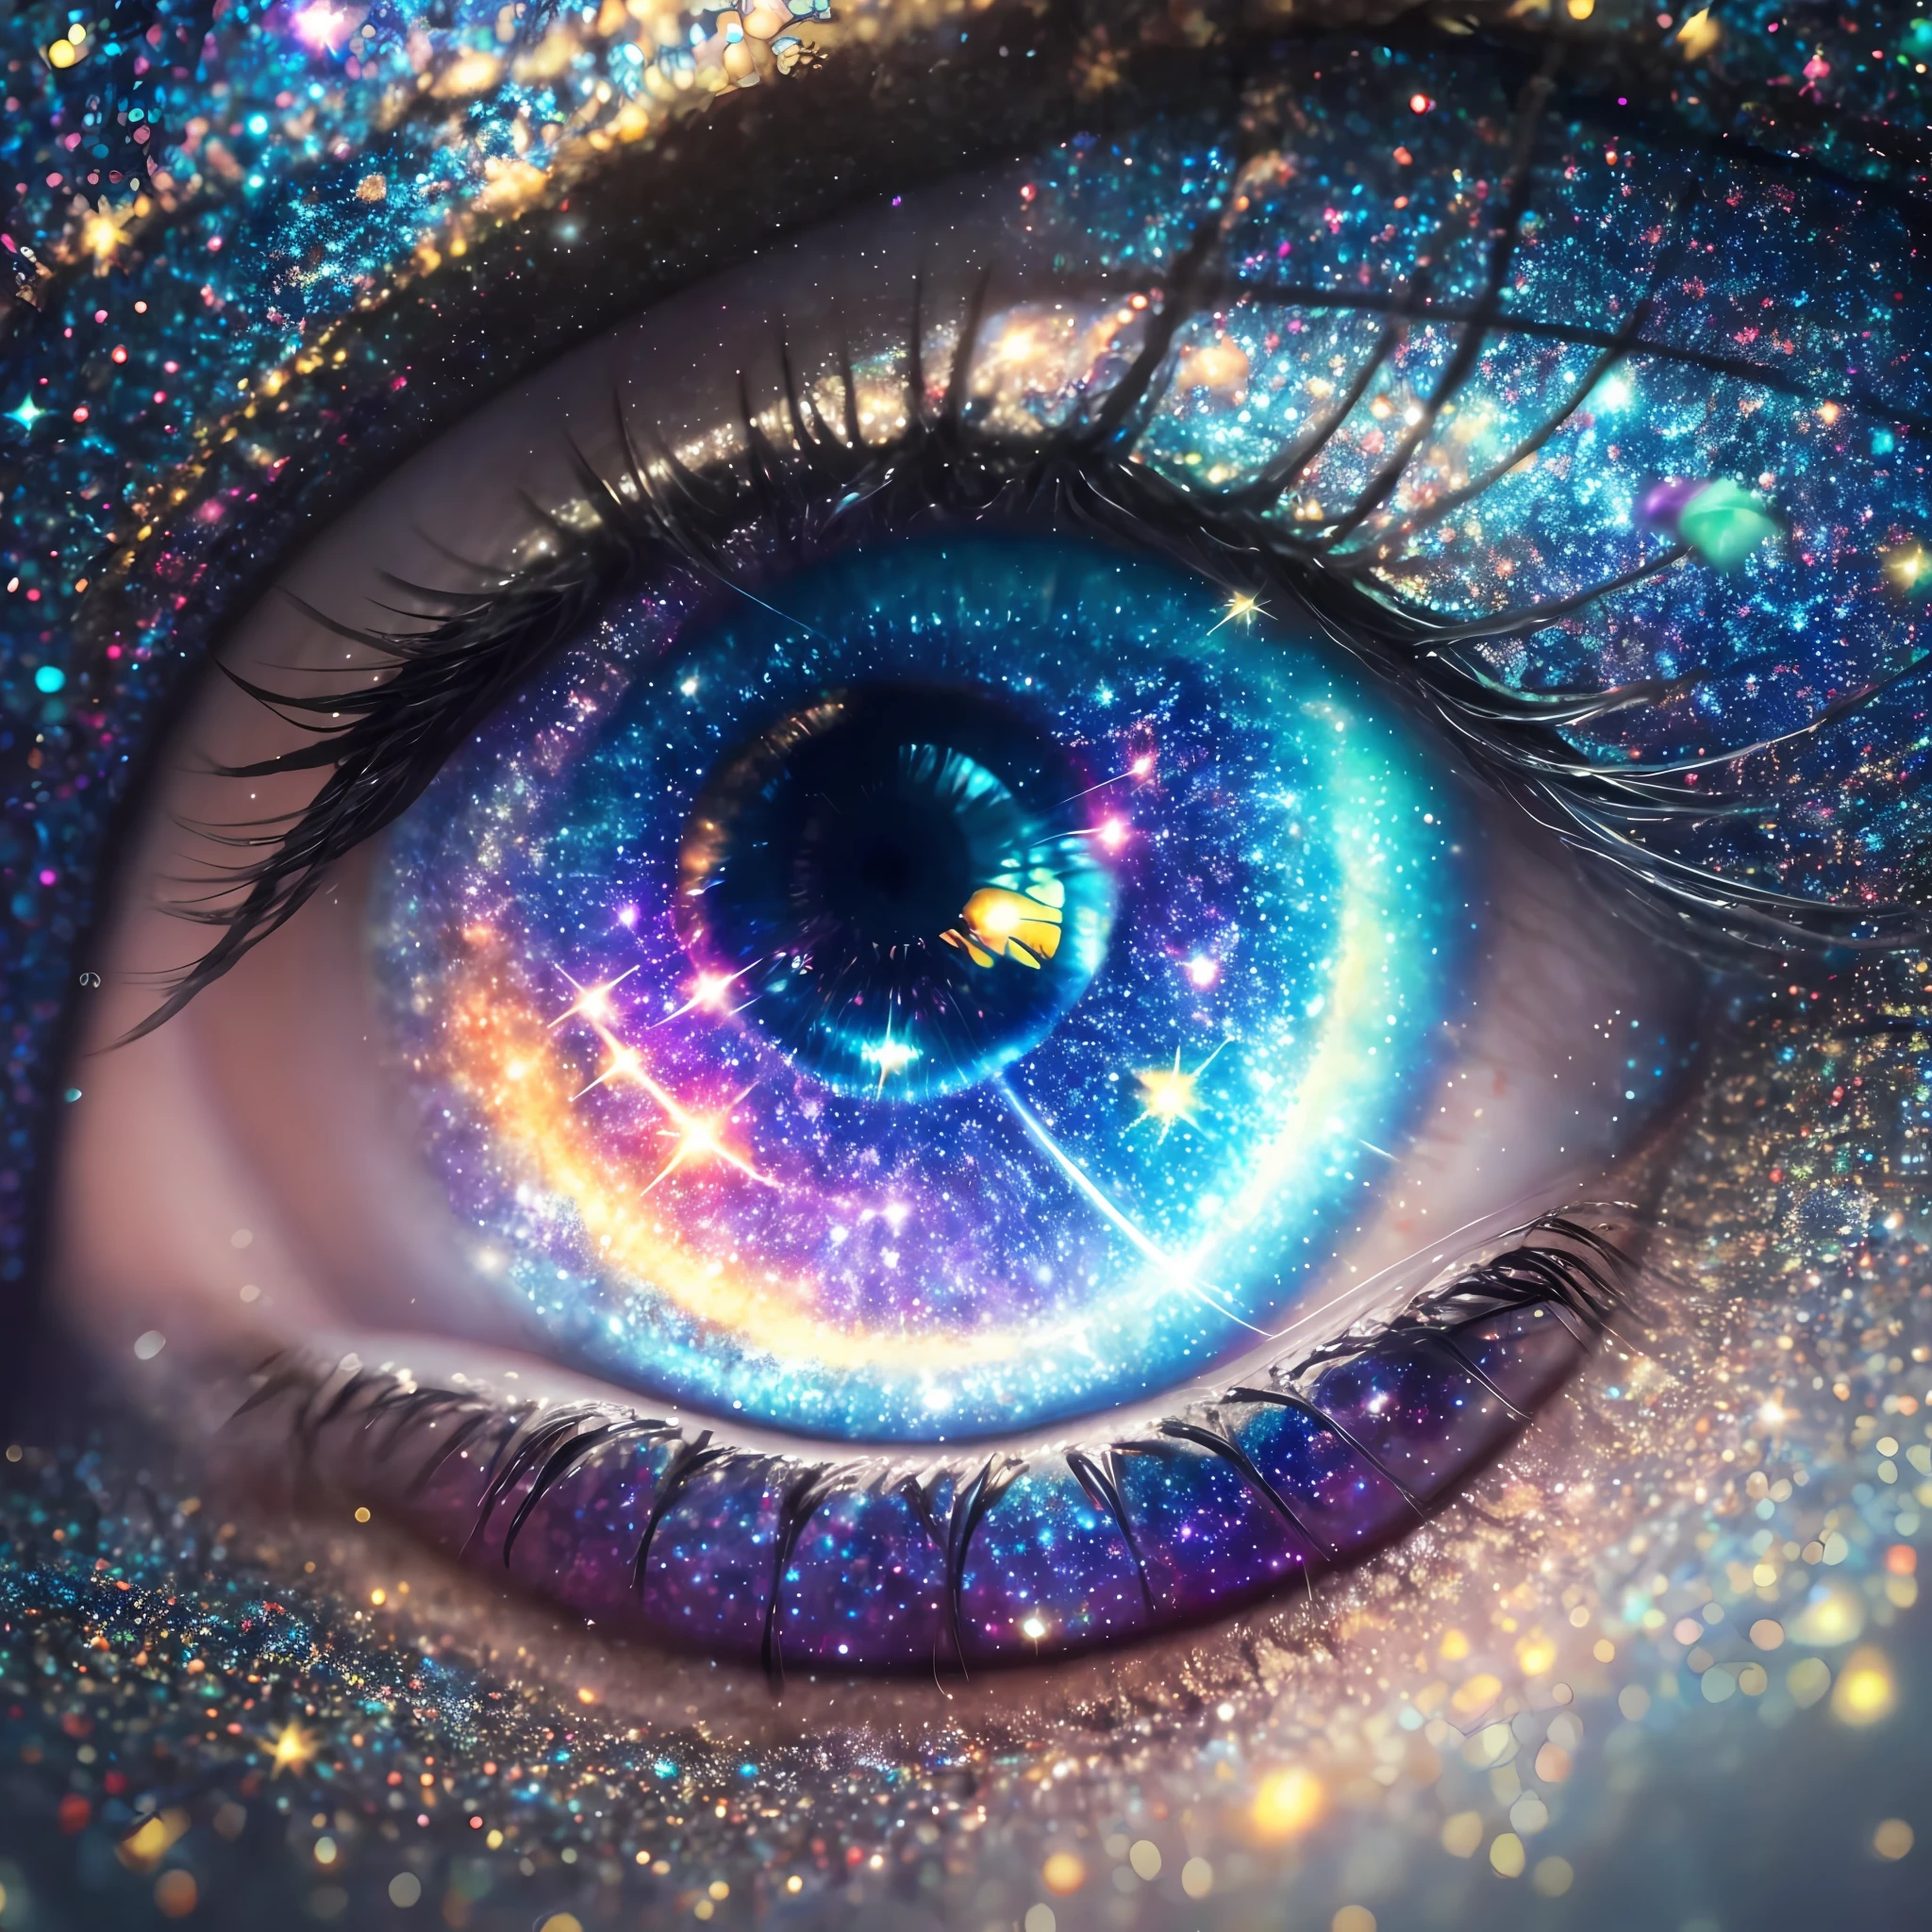 銀河を背景にした人の目のクローズアップ, 目の中の銀河, 宇宙の目, galaxy in the eye 👁️, 星は目に隠れています, ギャラクシーアイズ, 宇宙を眺める, beautiful glowing ギャラクシーアイズ, 目としての星, 第三の目のエネルギーをチャネリングする, 魔法の目, メタバースの奥深くへ